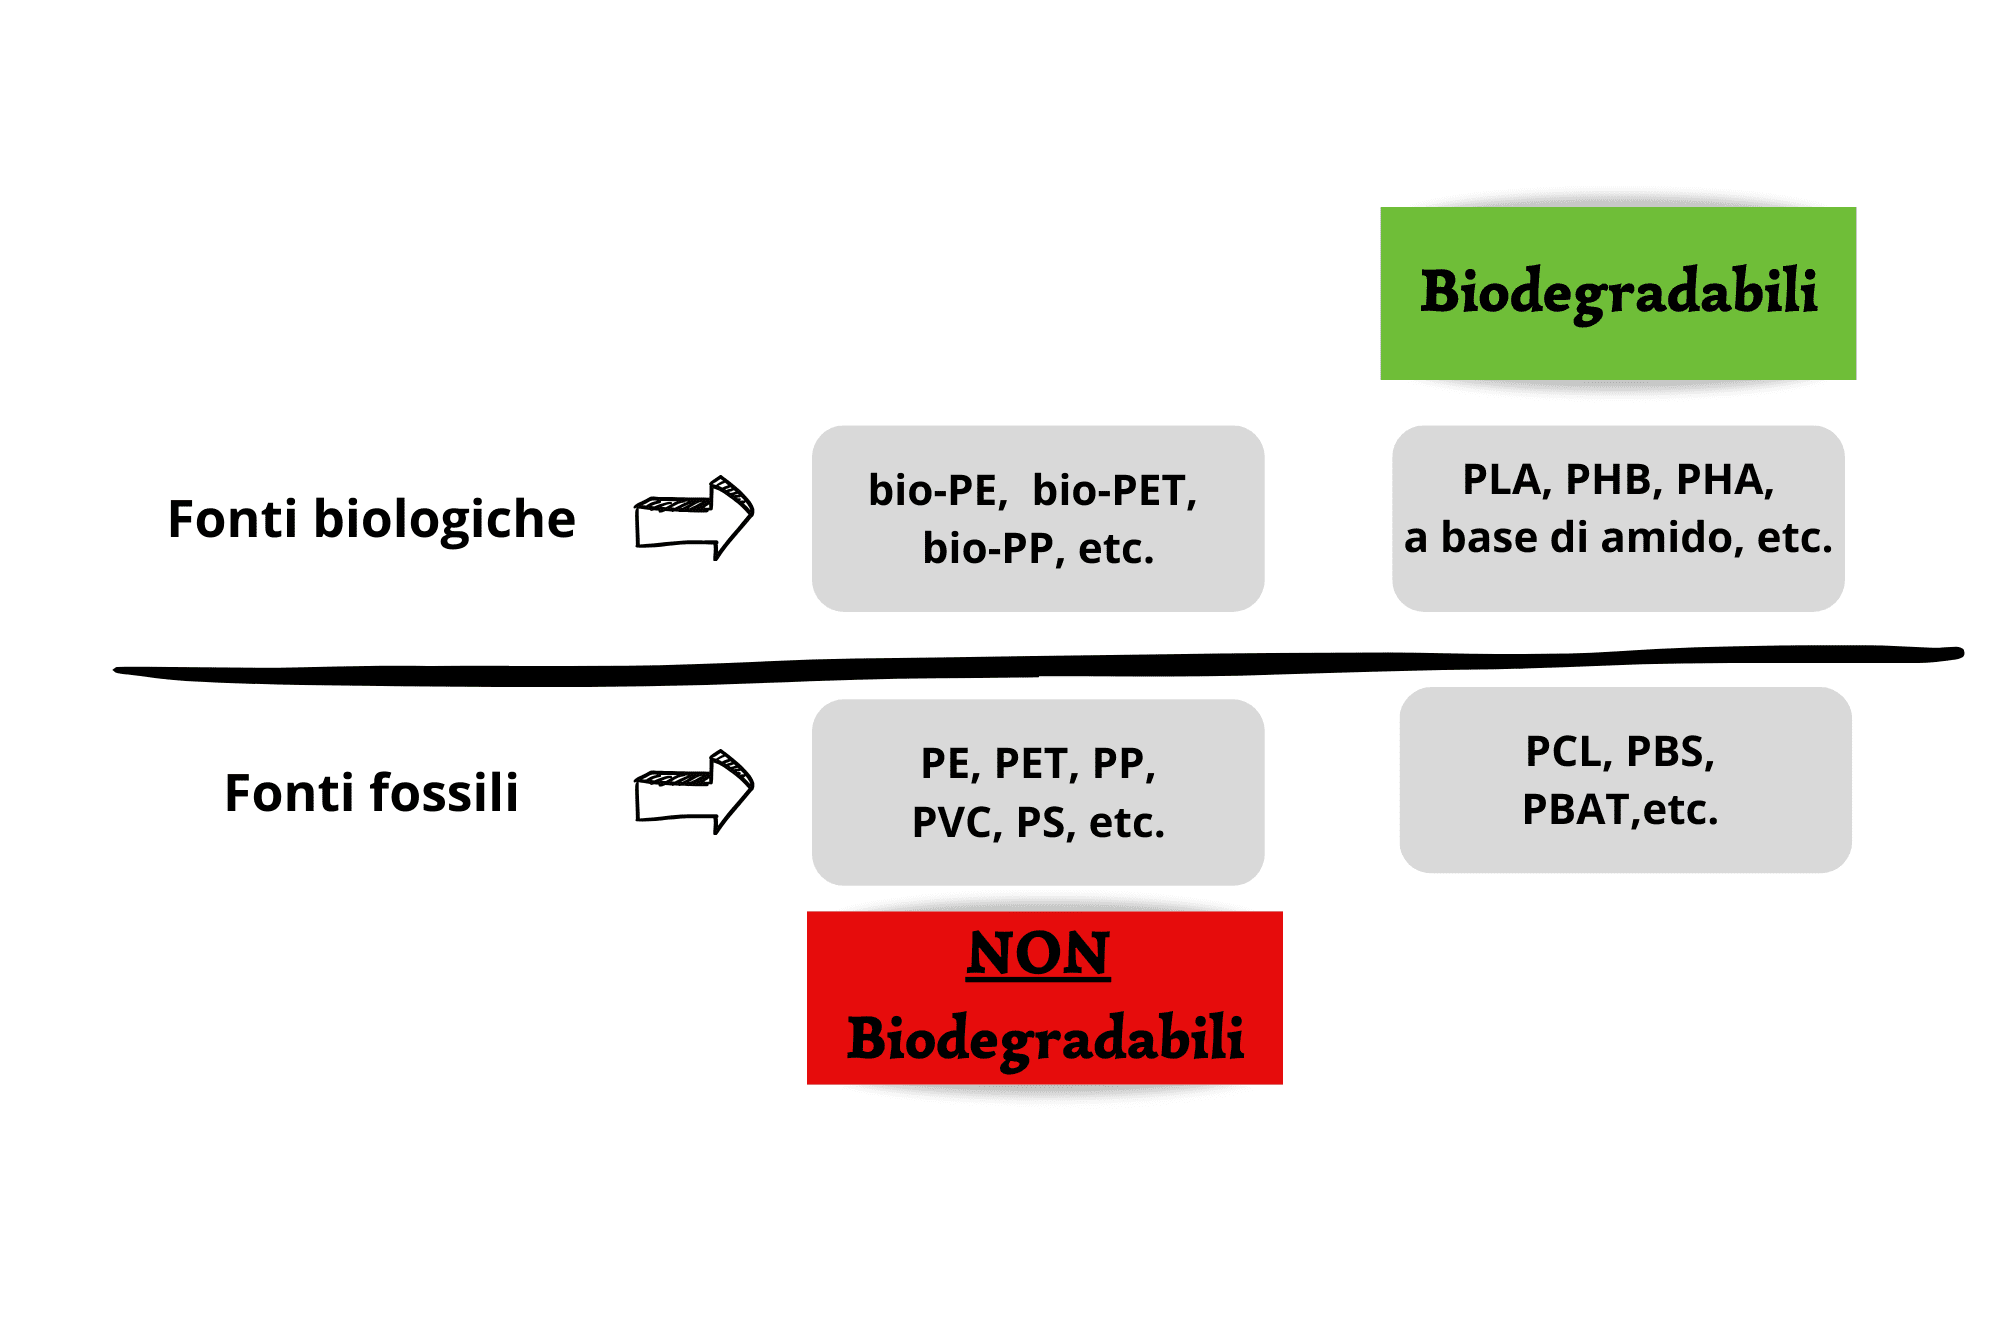 Il mondo delle bioplastiche. Le plastiche tradizionali sono solo di origine fossile e non biodegradabili; le bioplastiche, invece, possono derivare sia da fonti fossili che da fonti biologiche. L'origine biologica non ne garantisce necessariamente la biodegradazione. 